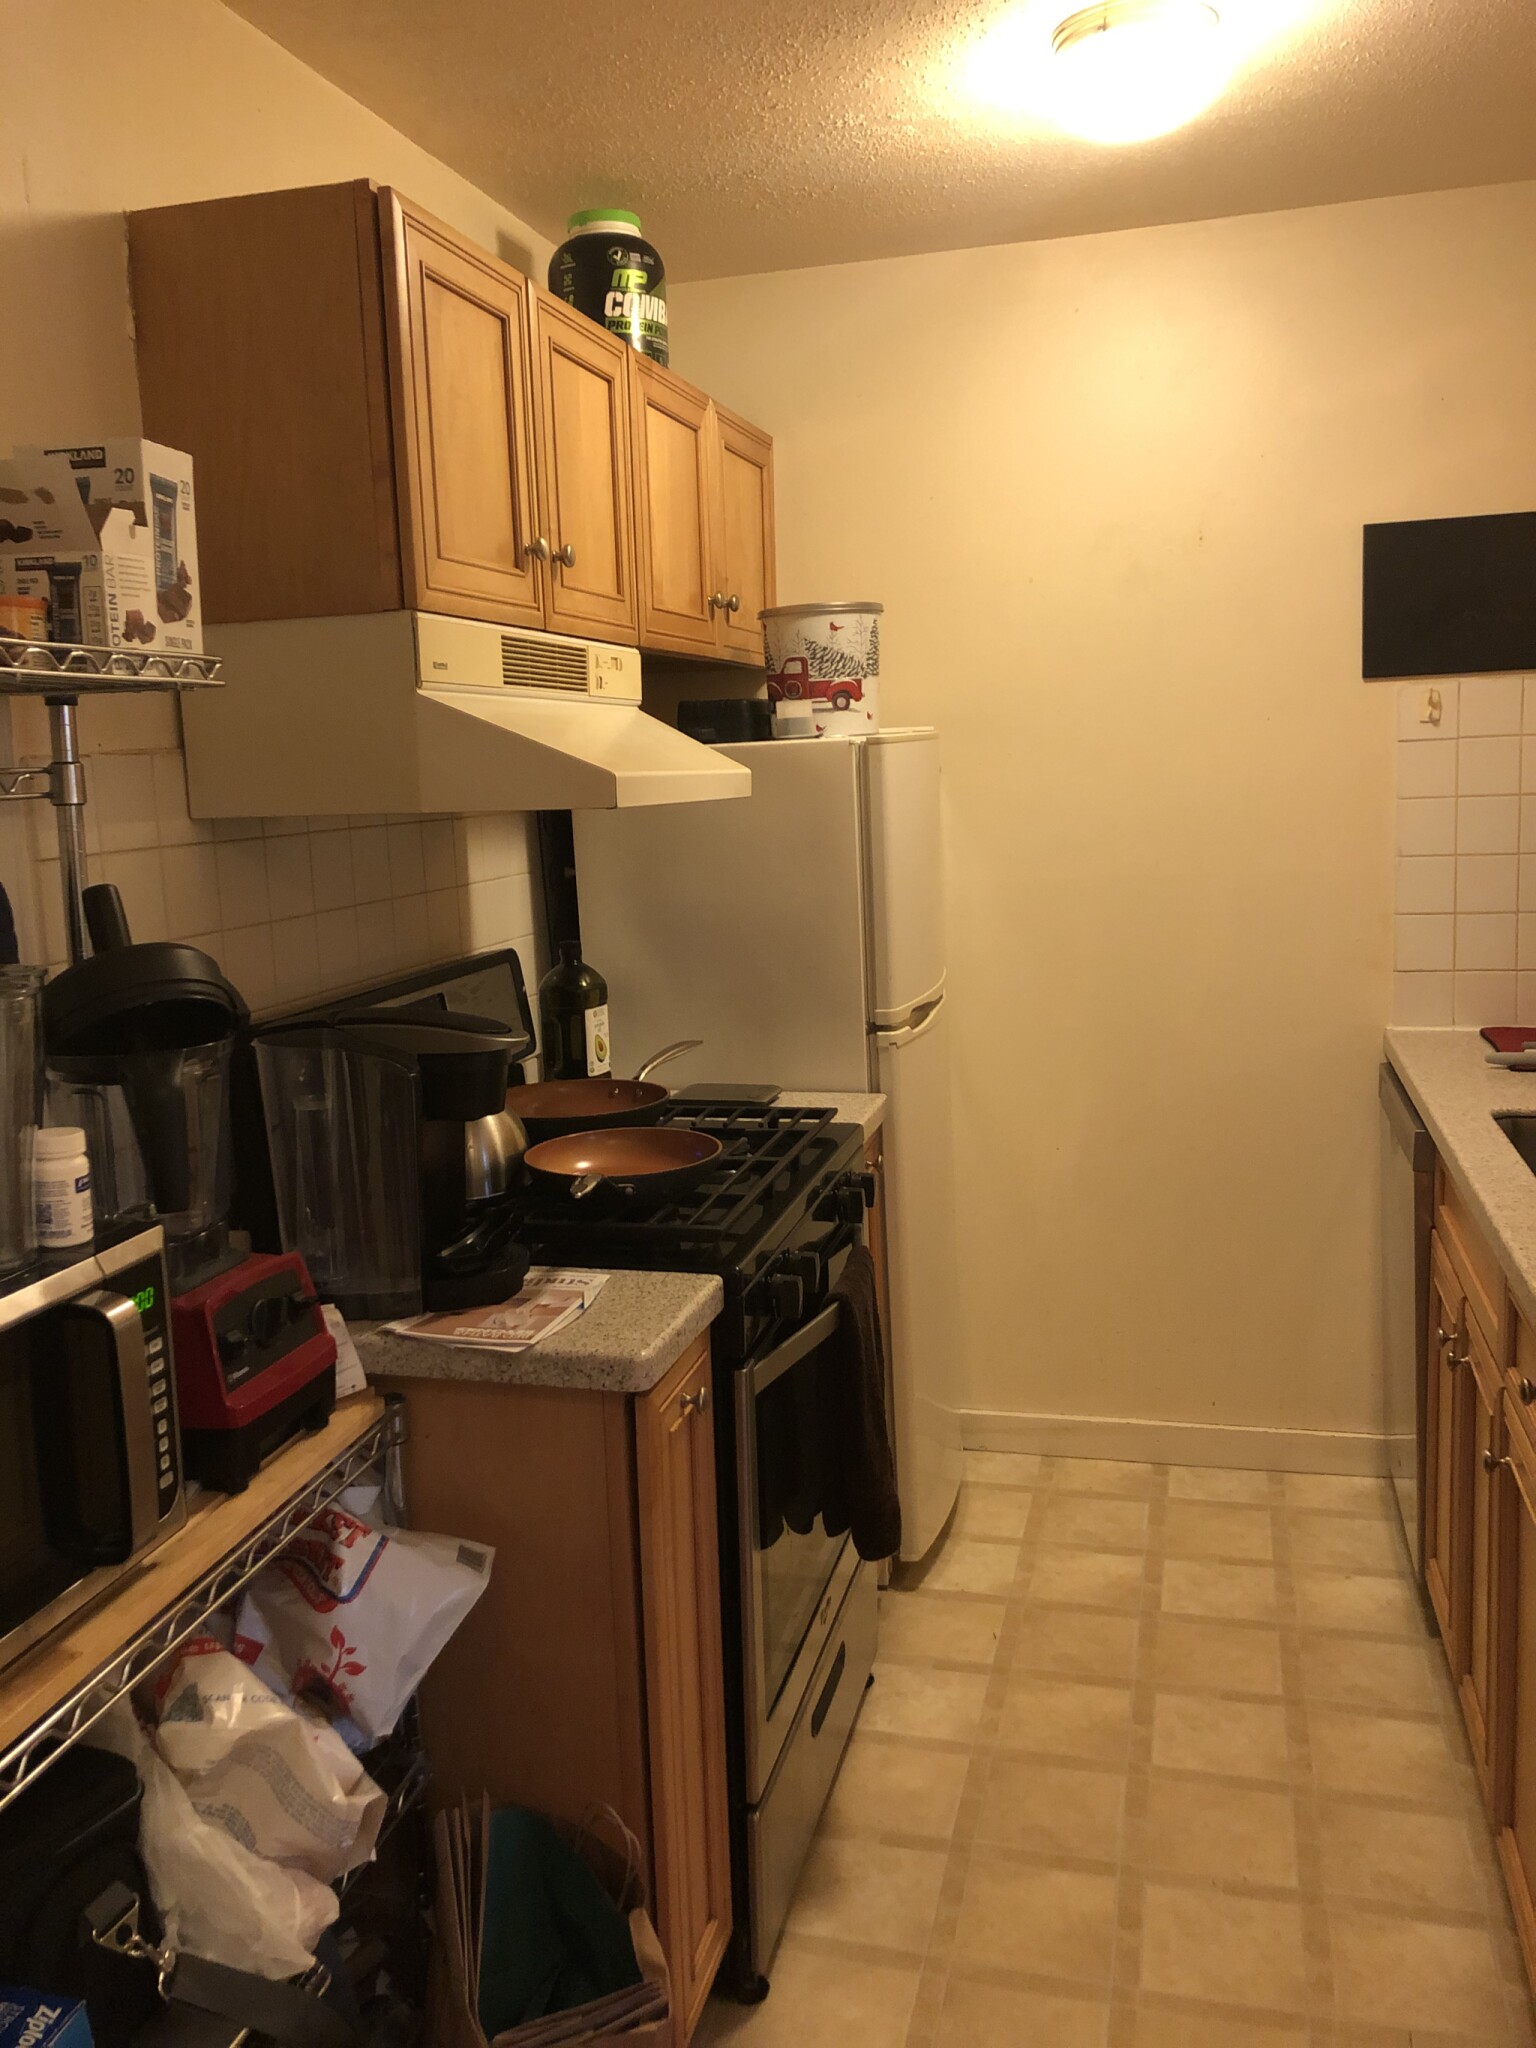 Photos of apartment on Kenrick St.,Boston MA 02135